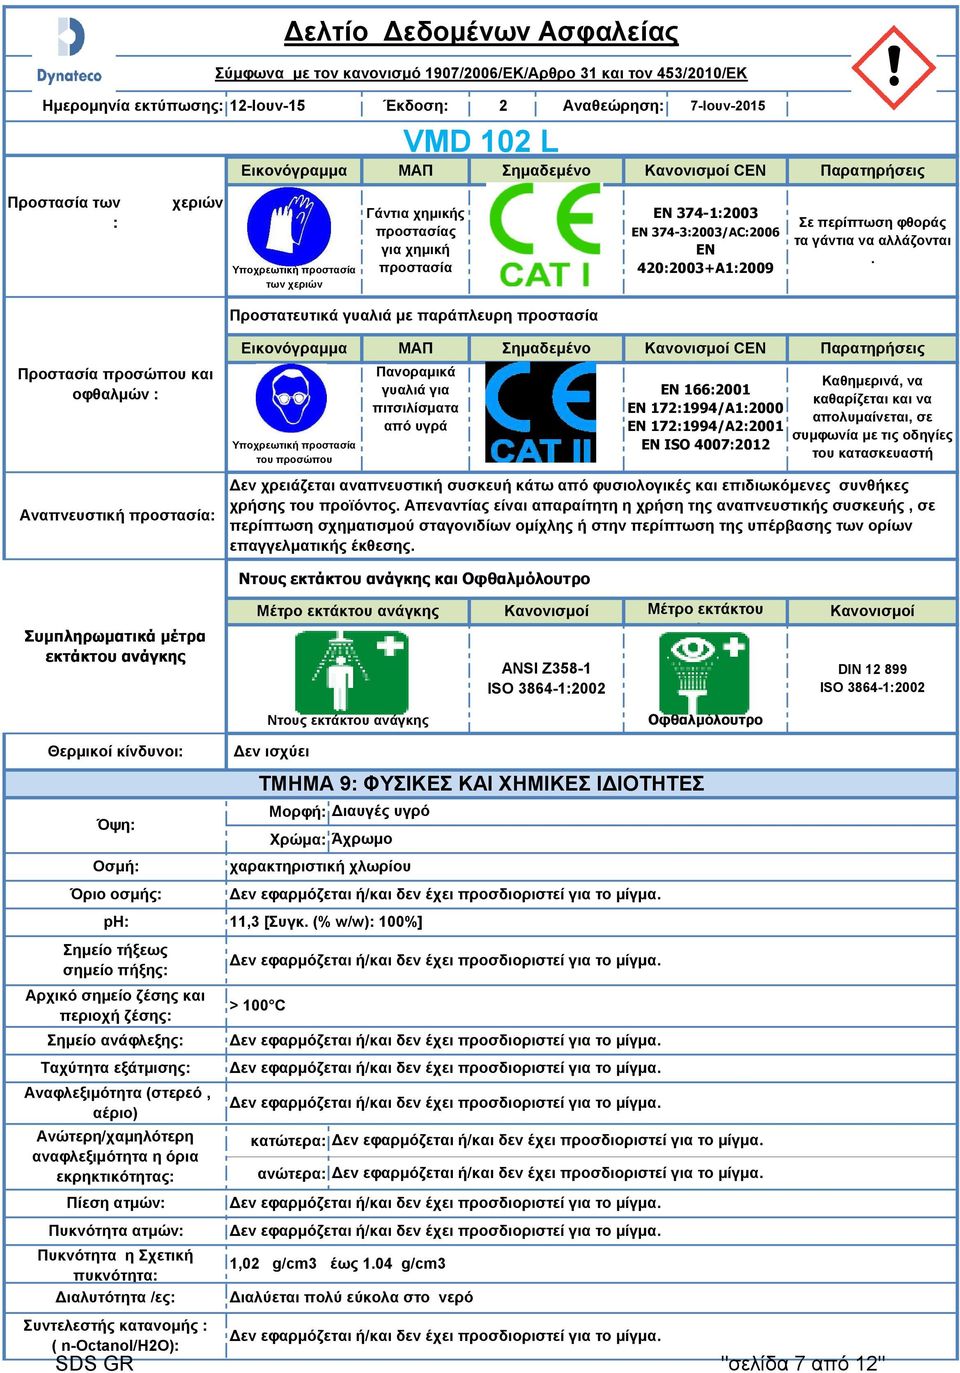 Προστασία προσώπου και οφθαλμών : Αναπνευστική προστασία: Εικονόγραμμα Υποχρεωτική προστασία του προσώπου ΜΑΠ Πανοραμικά γυαλιά για πιτσιλίσματα από υγρά Σημαδεμένο Κανονισμοί CEN EN 166:001 EN